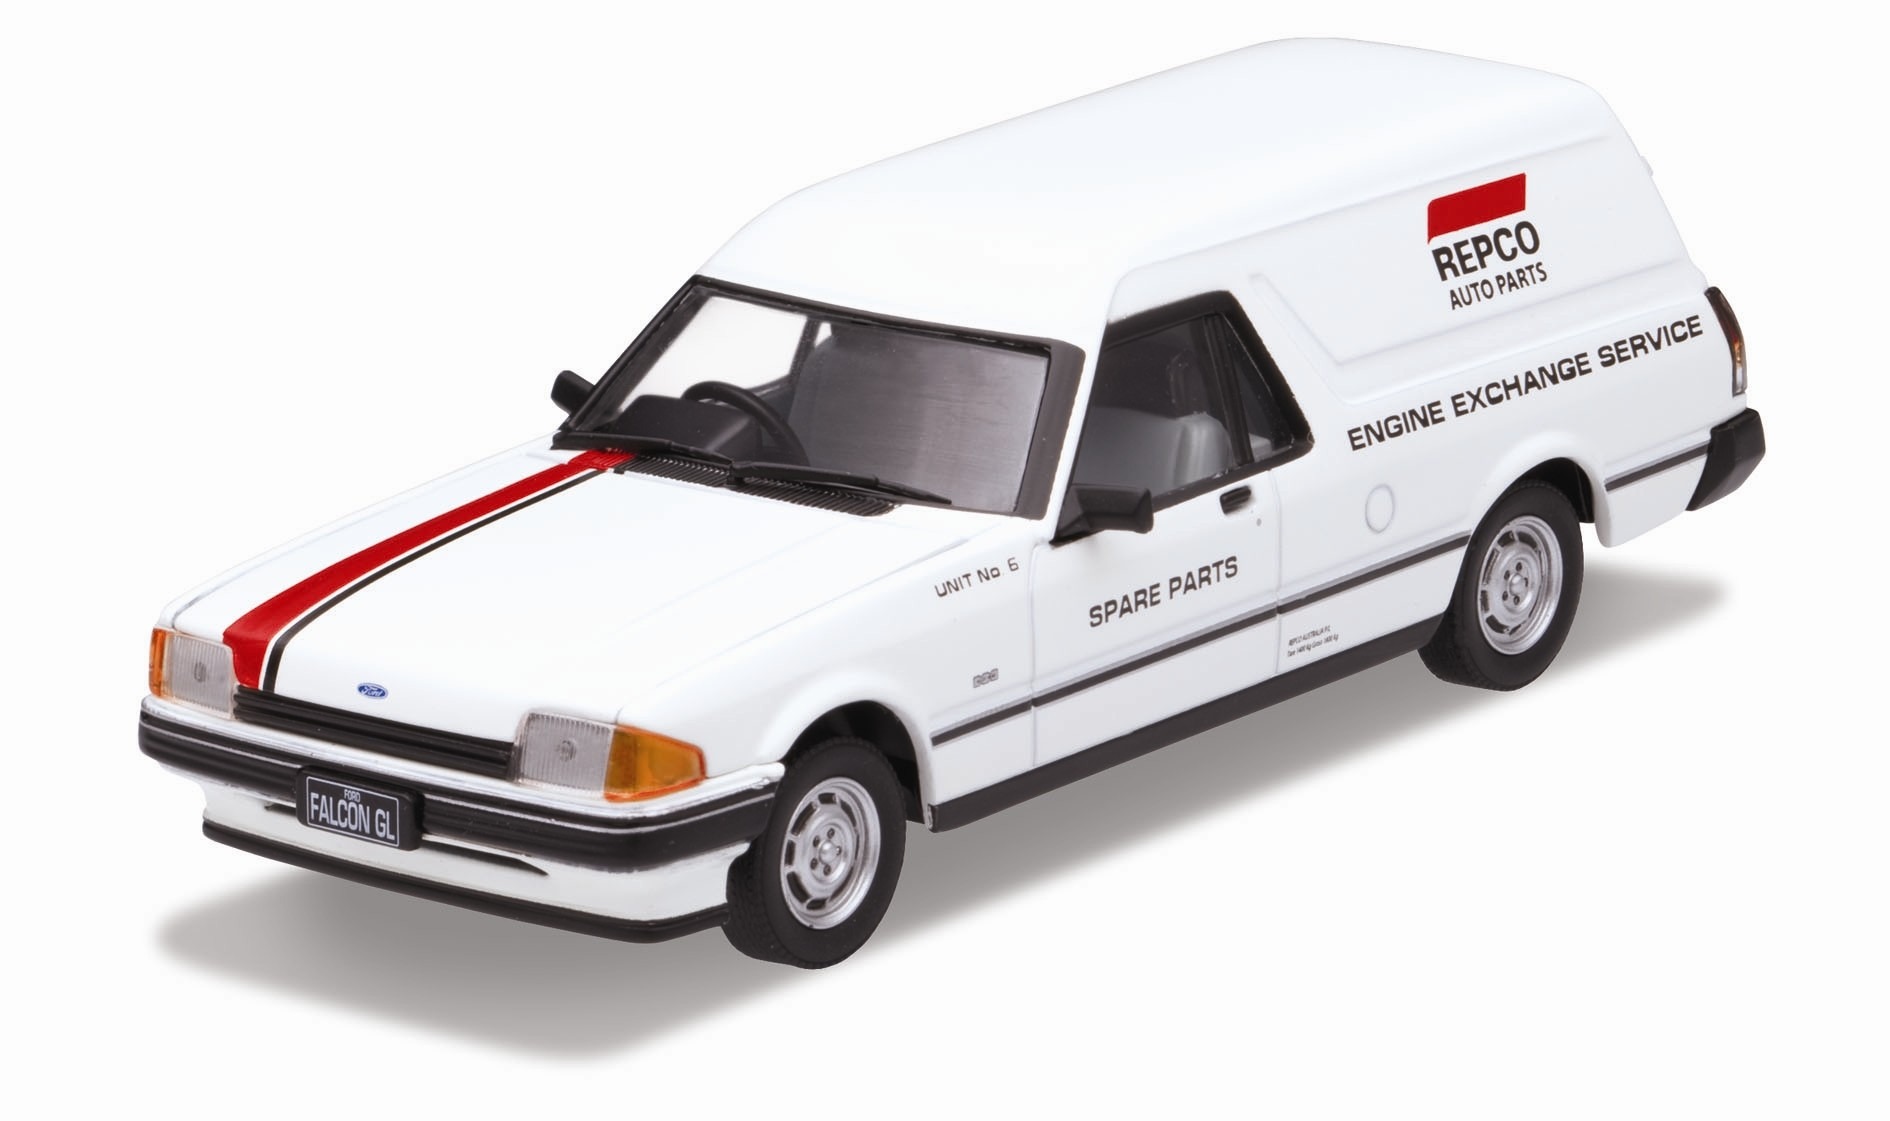 1982 Ford Falcon XE Panel Van – REPCO